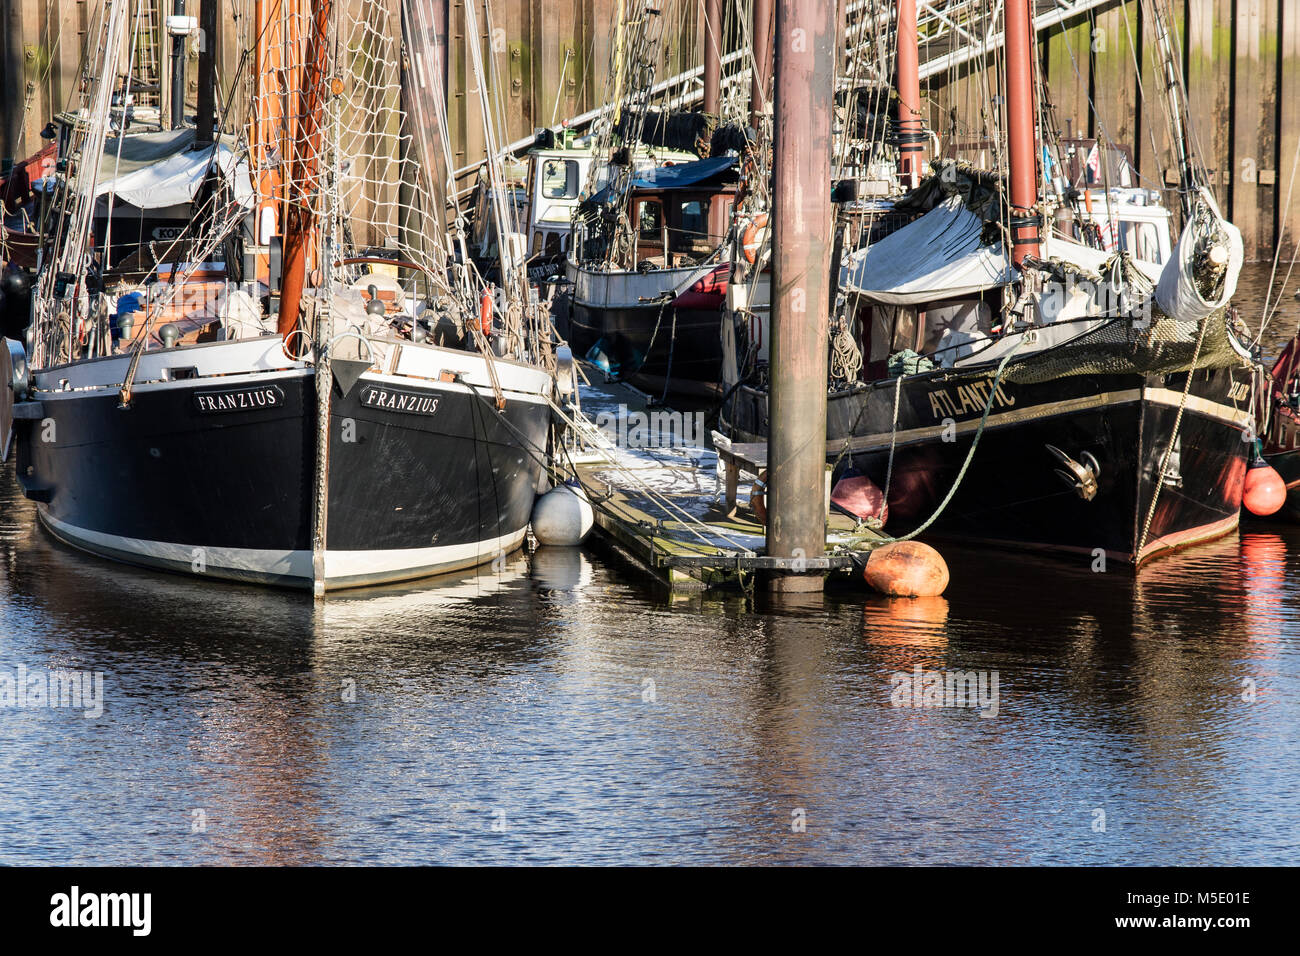 Yachthafen in Bremen-Vegesack mit zum Teil historischen Segelbooten Stock Photo